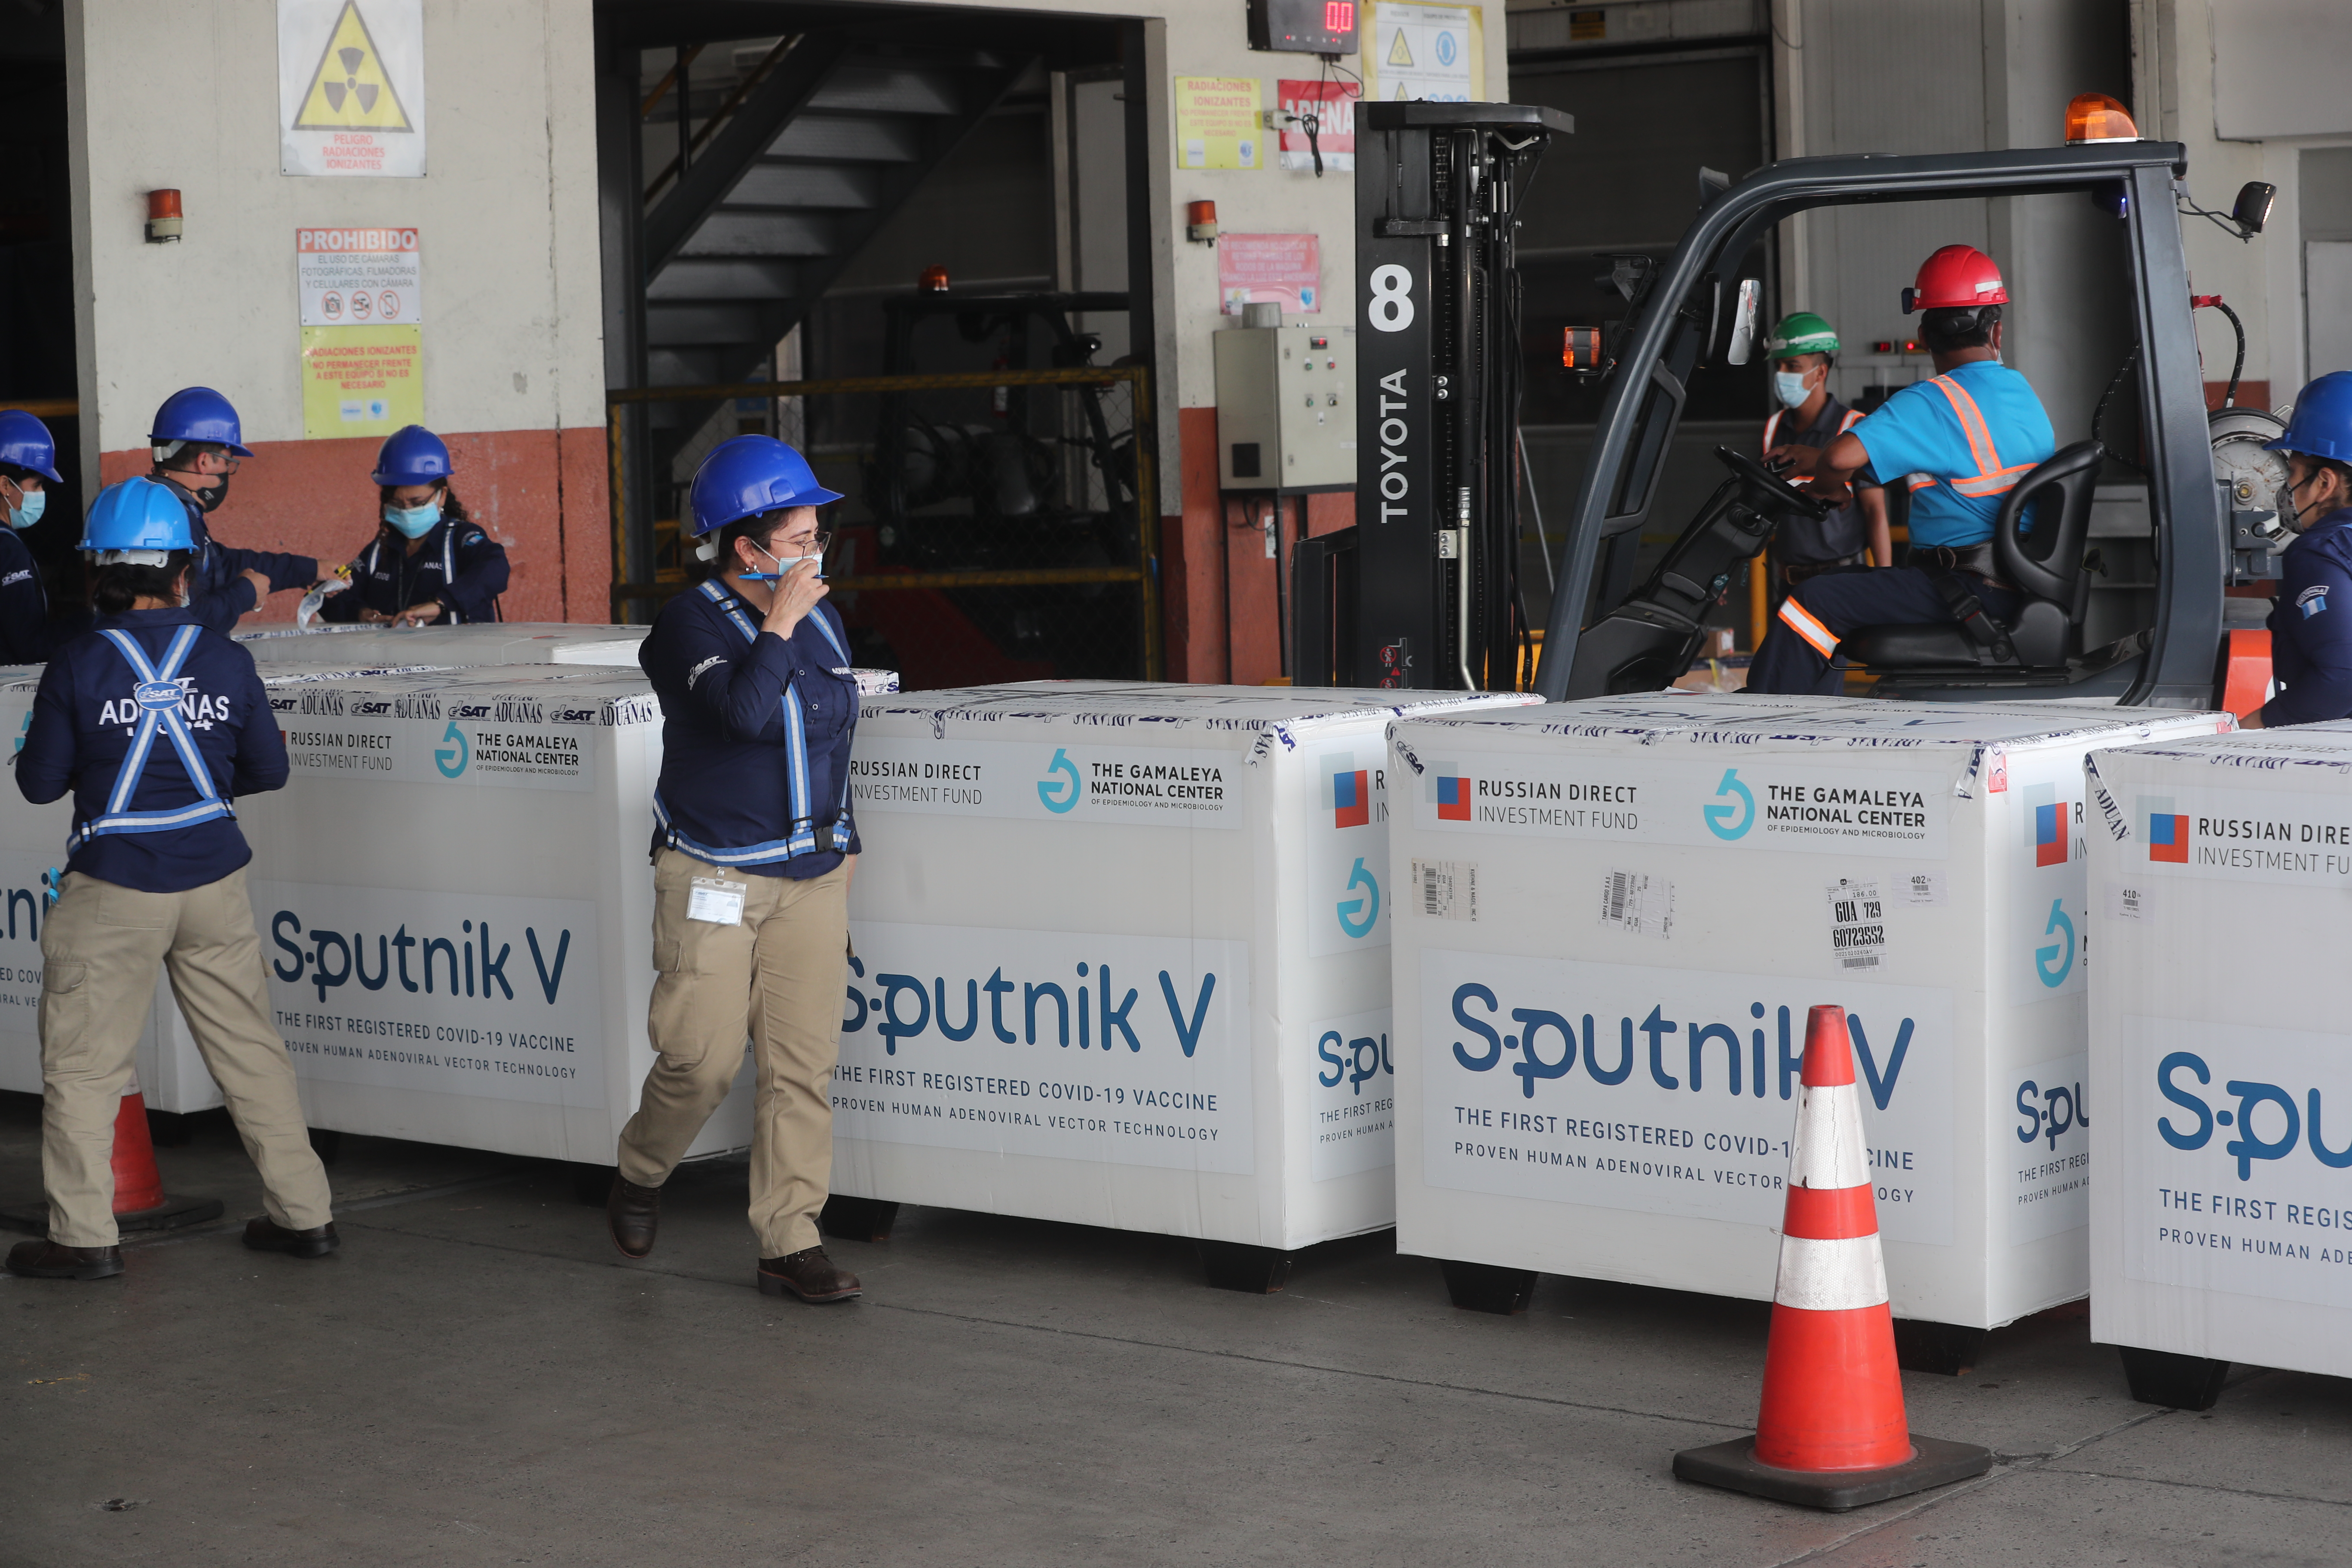 Un lote de 200 mil dosis de Sputnik V arriba a Guatemala el 3 de julio del 2021 al Aeropuerto Internacional La Aurora, vía Combex.
(Foto Prensa Libre: HemerotecaPL)

Fotografa. Erick Avila:                           03/07/2021